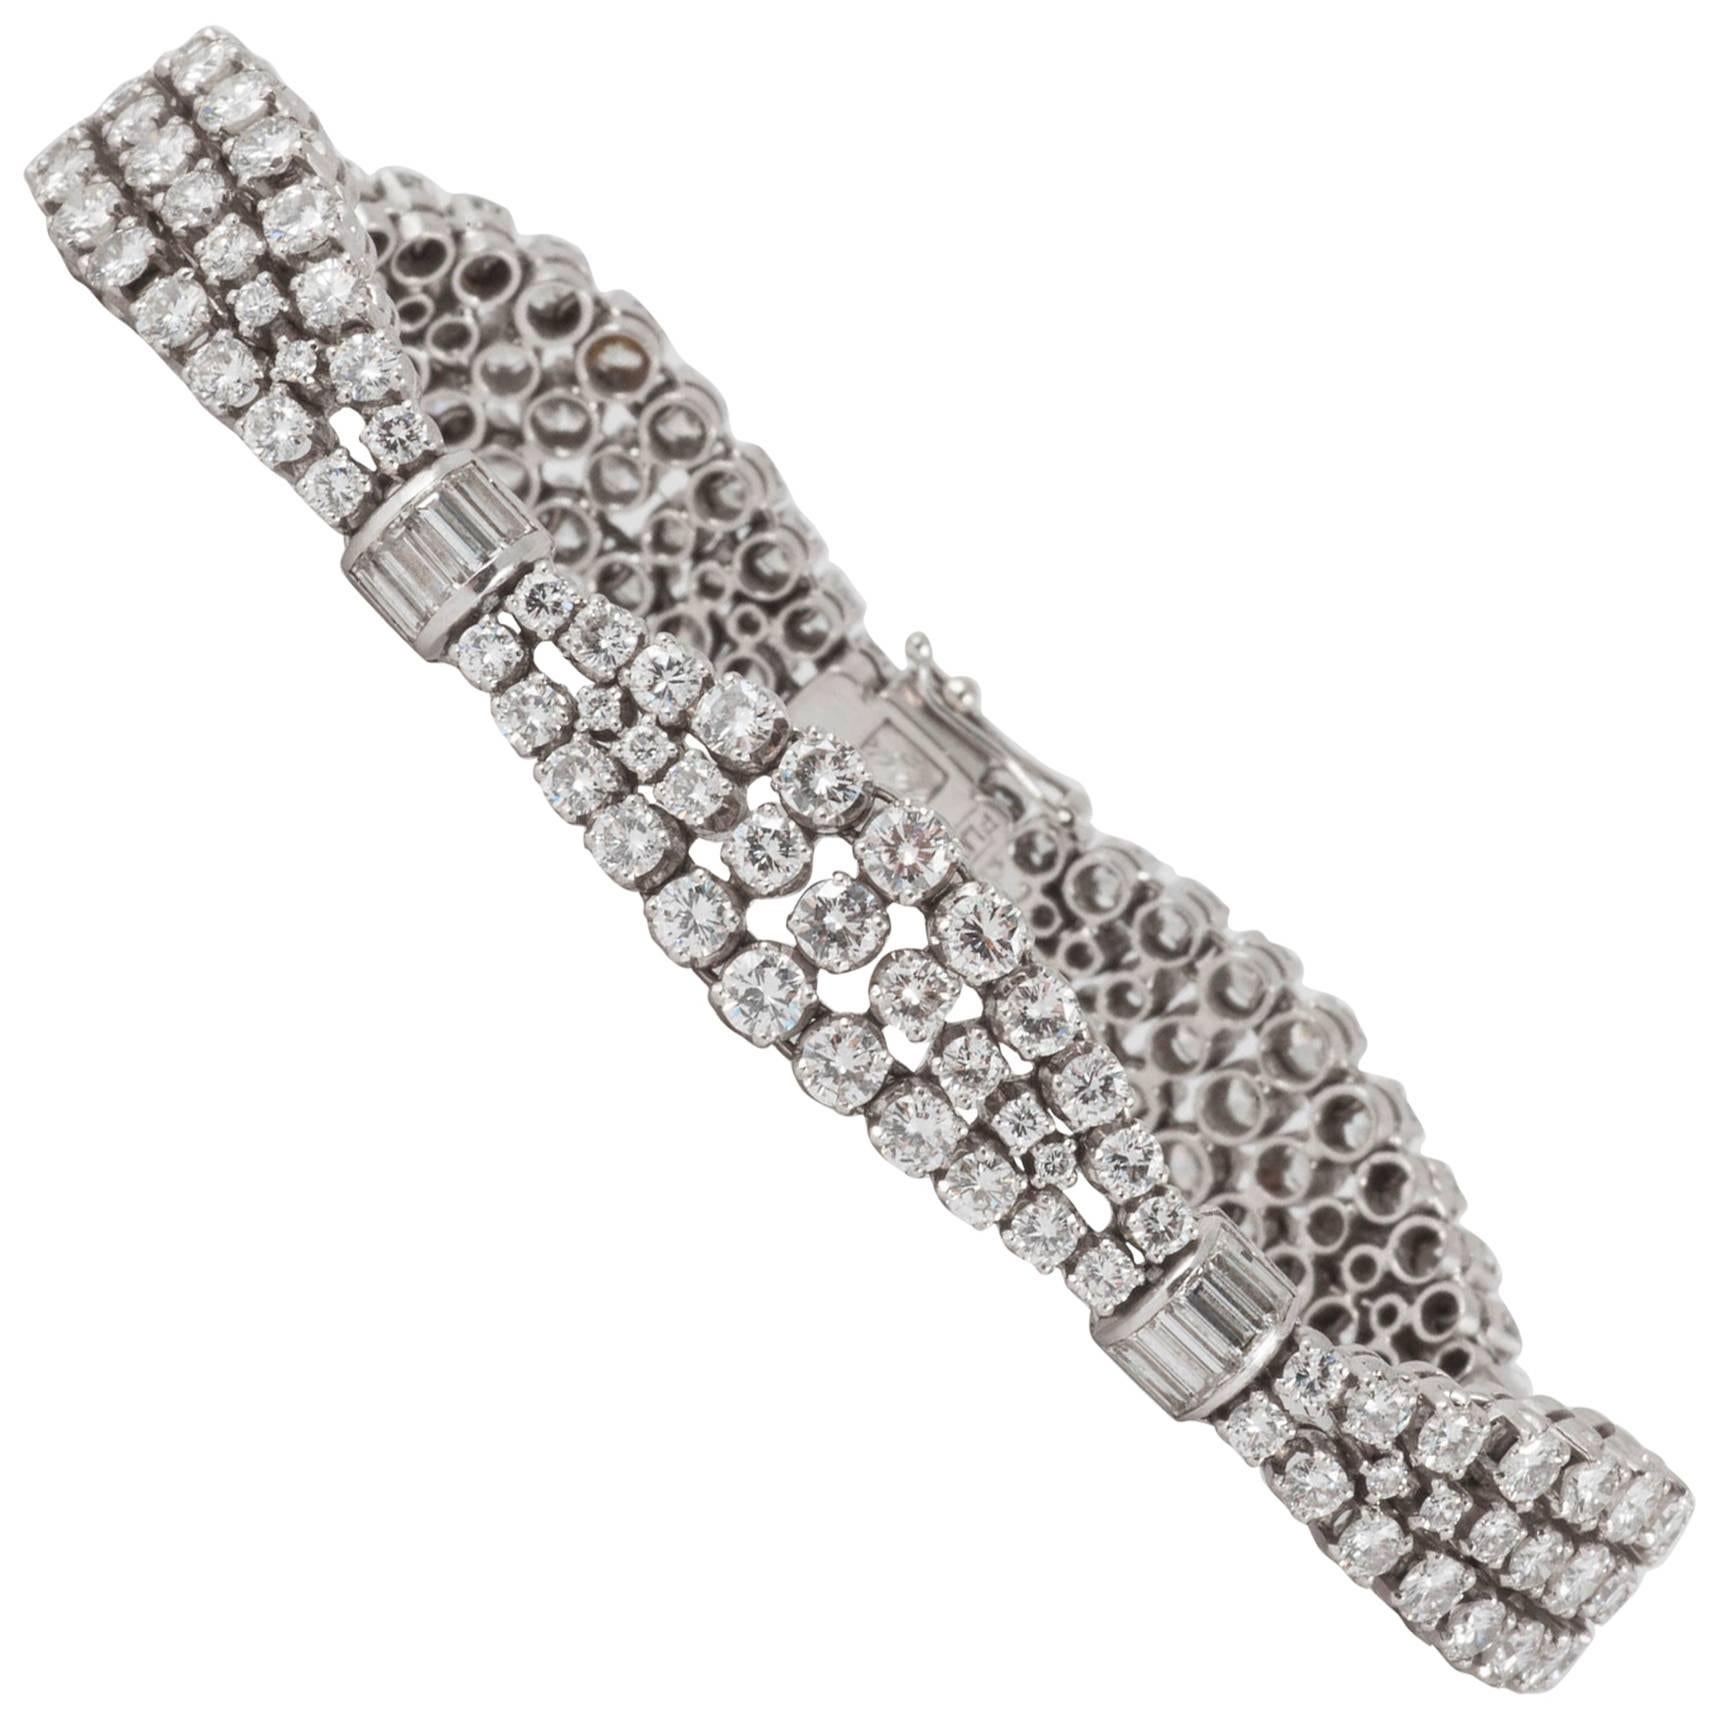 Gabuglio Brilliant and Baguette Diamond Platinum Bracelet circa 1950